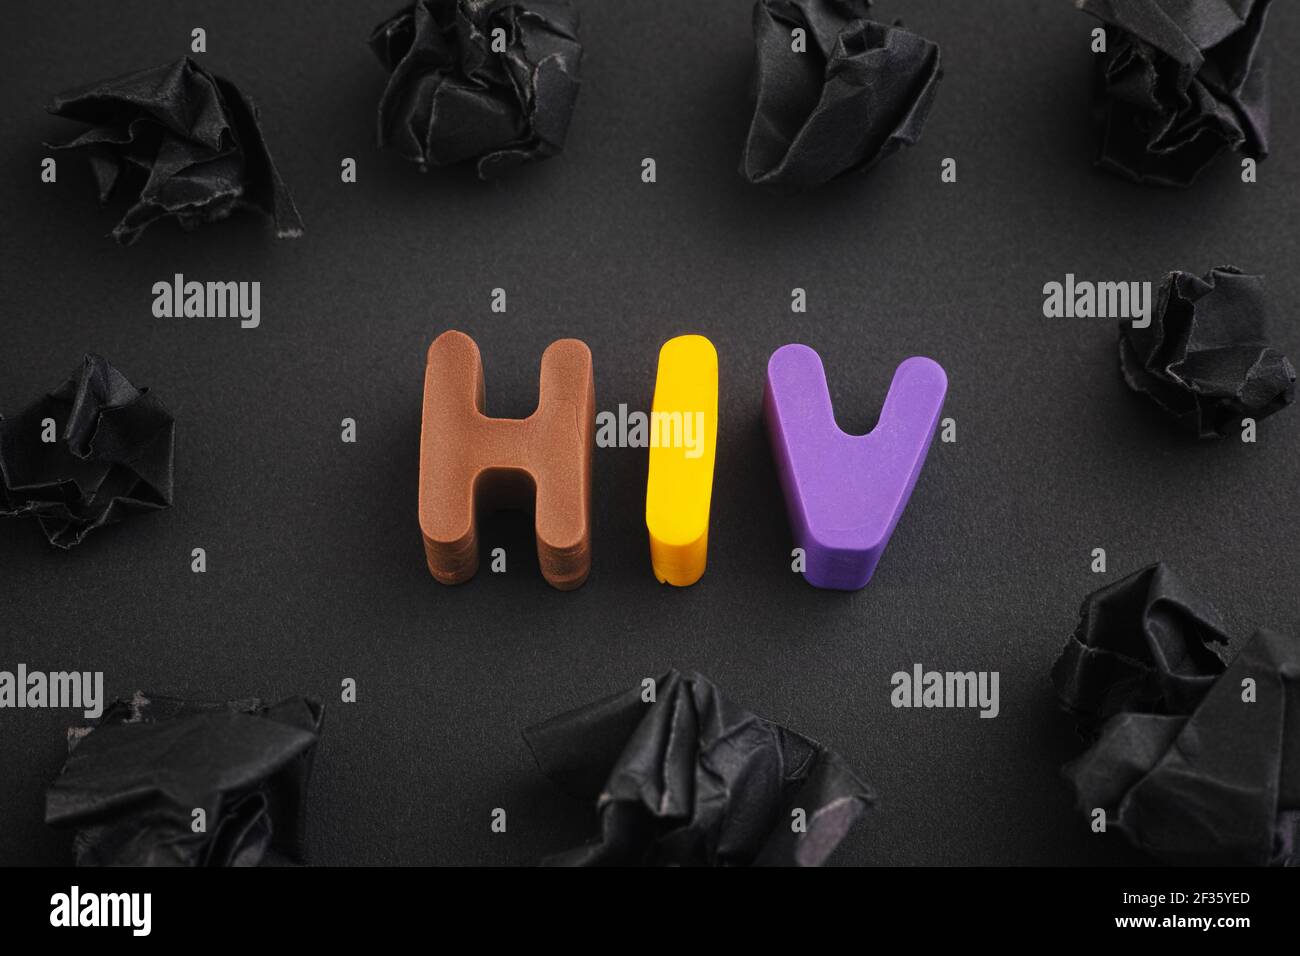 L'abbreviazione HIV è composta da lettere di argilla polimerica con alcune palle di carta nera sbriciottita intorno ad essa. Primo piano. Foto Stock